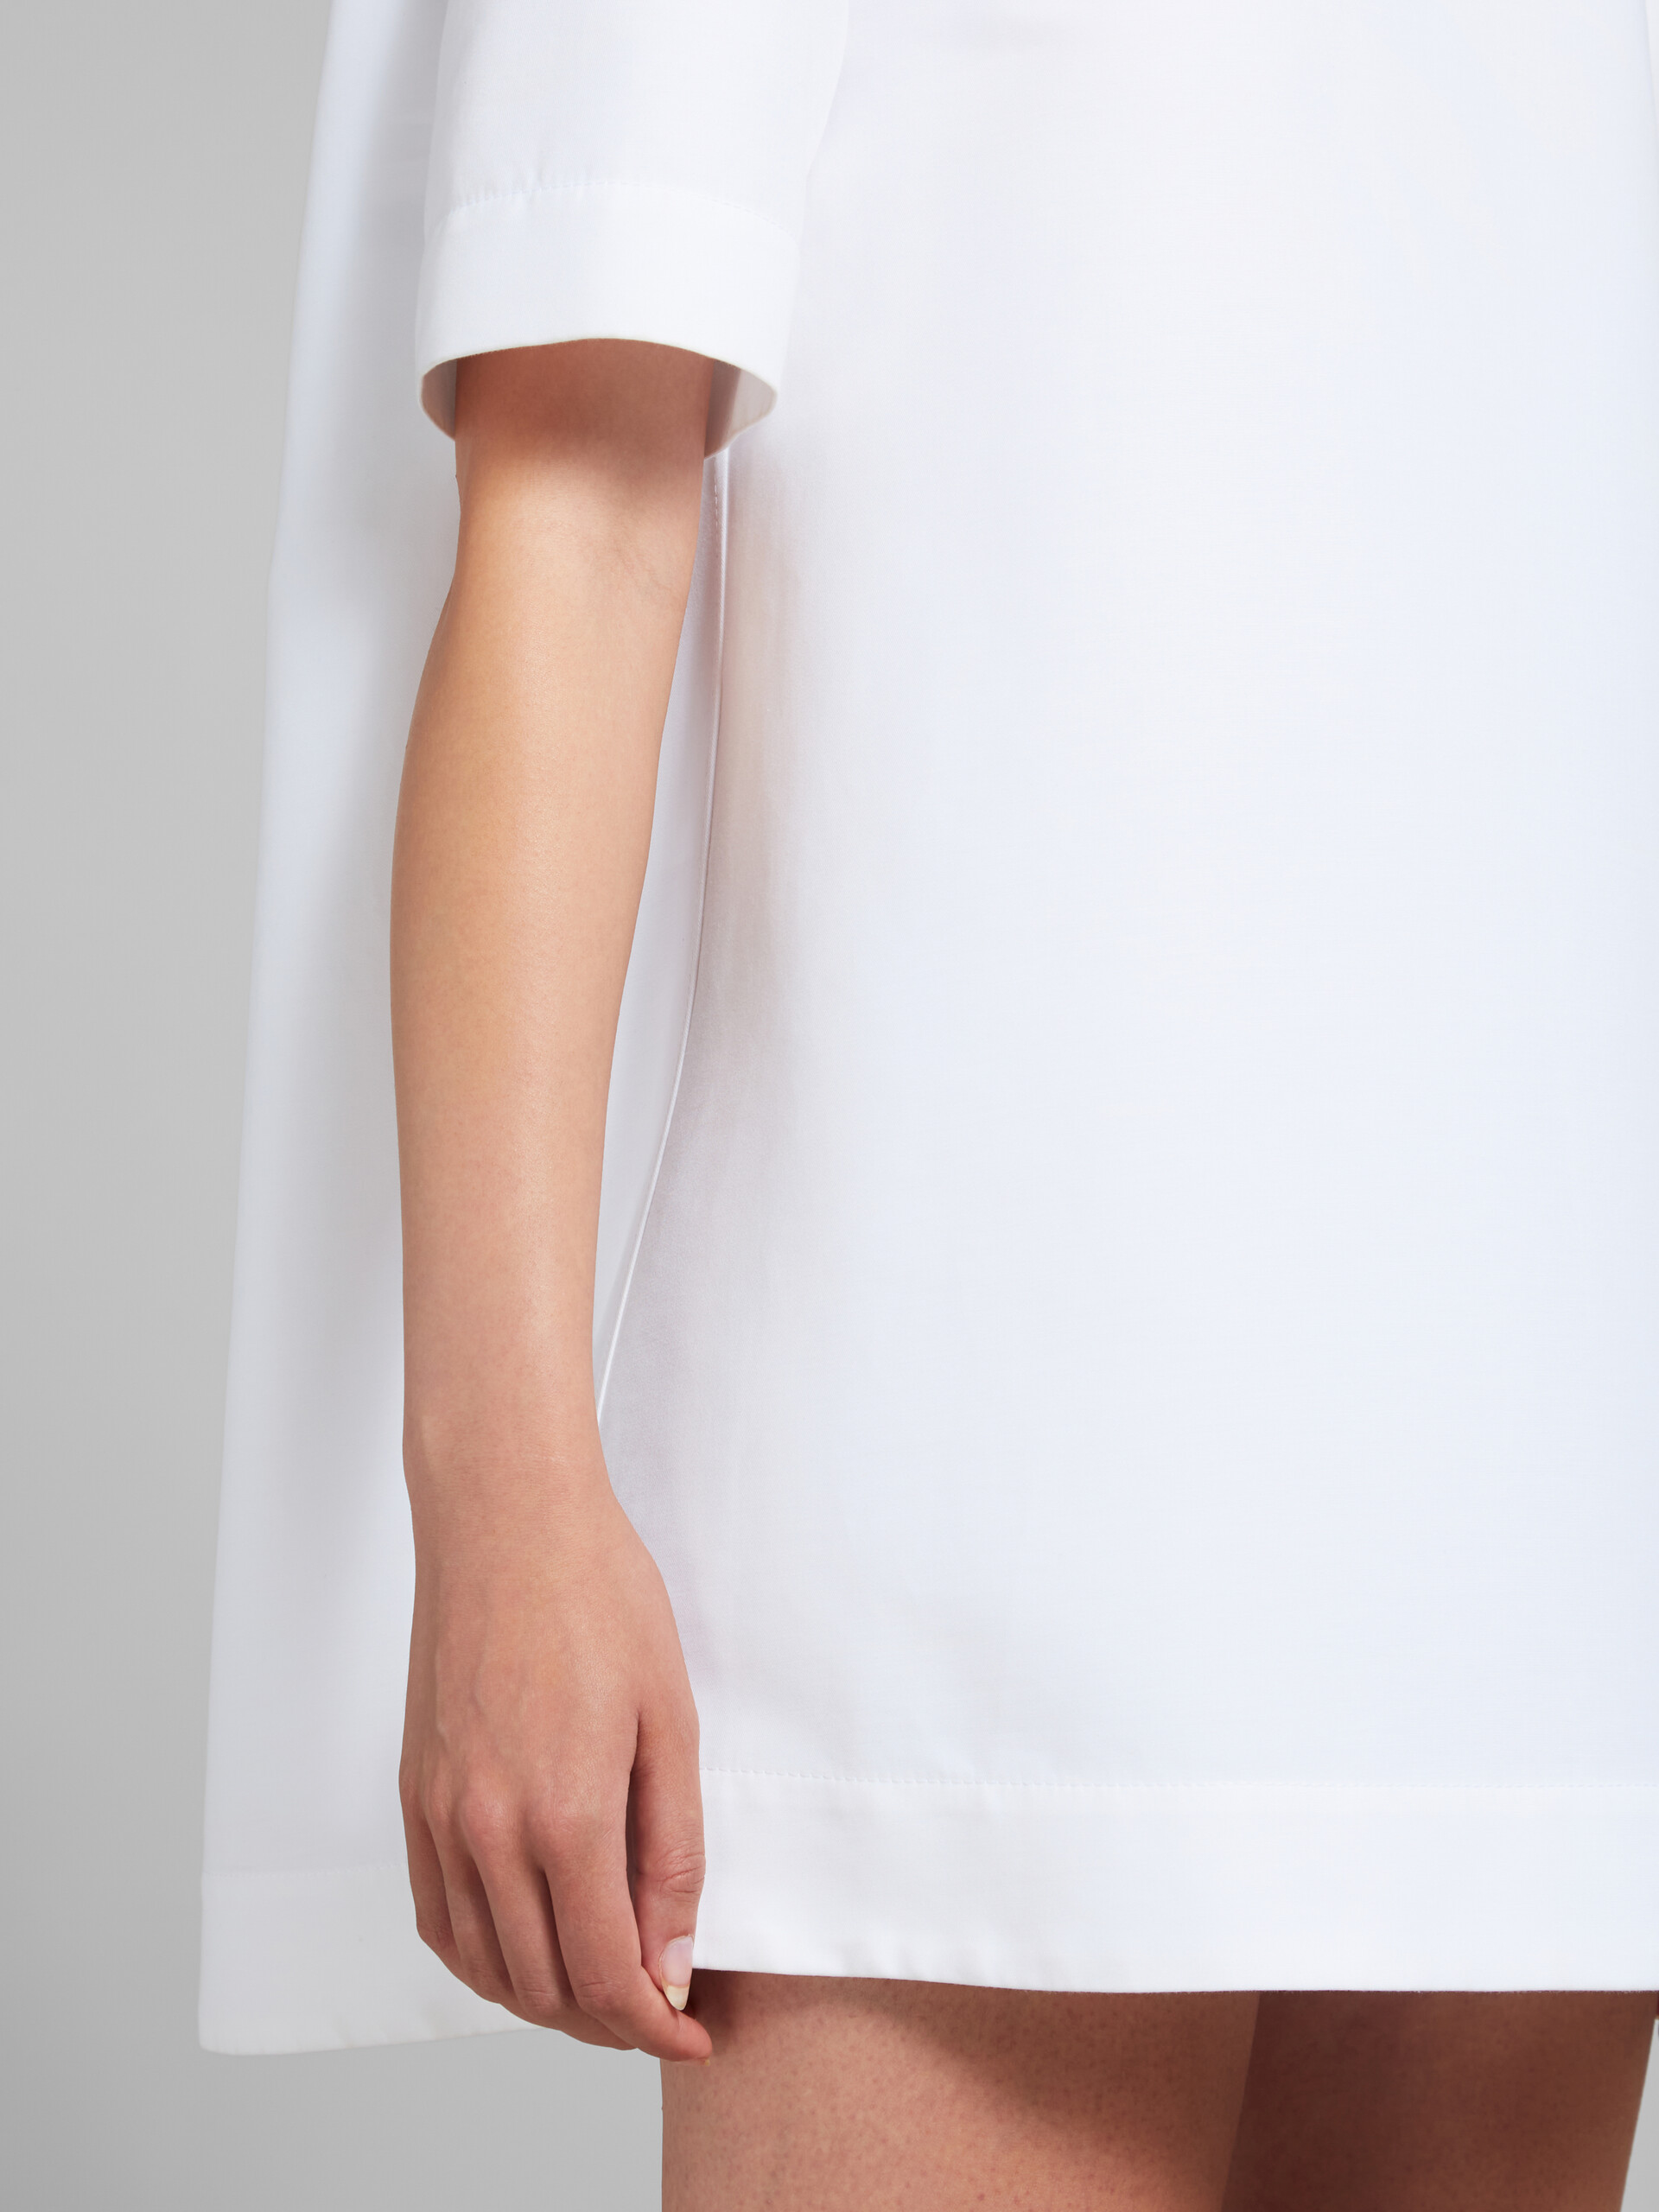 Vestido de cady blanco de corte mini cocoon - Vestidos - Image 5